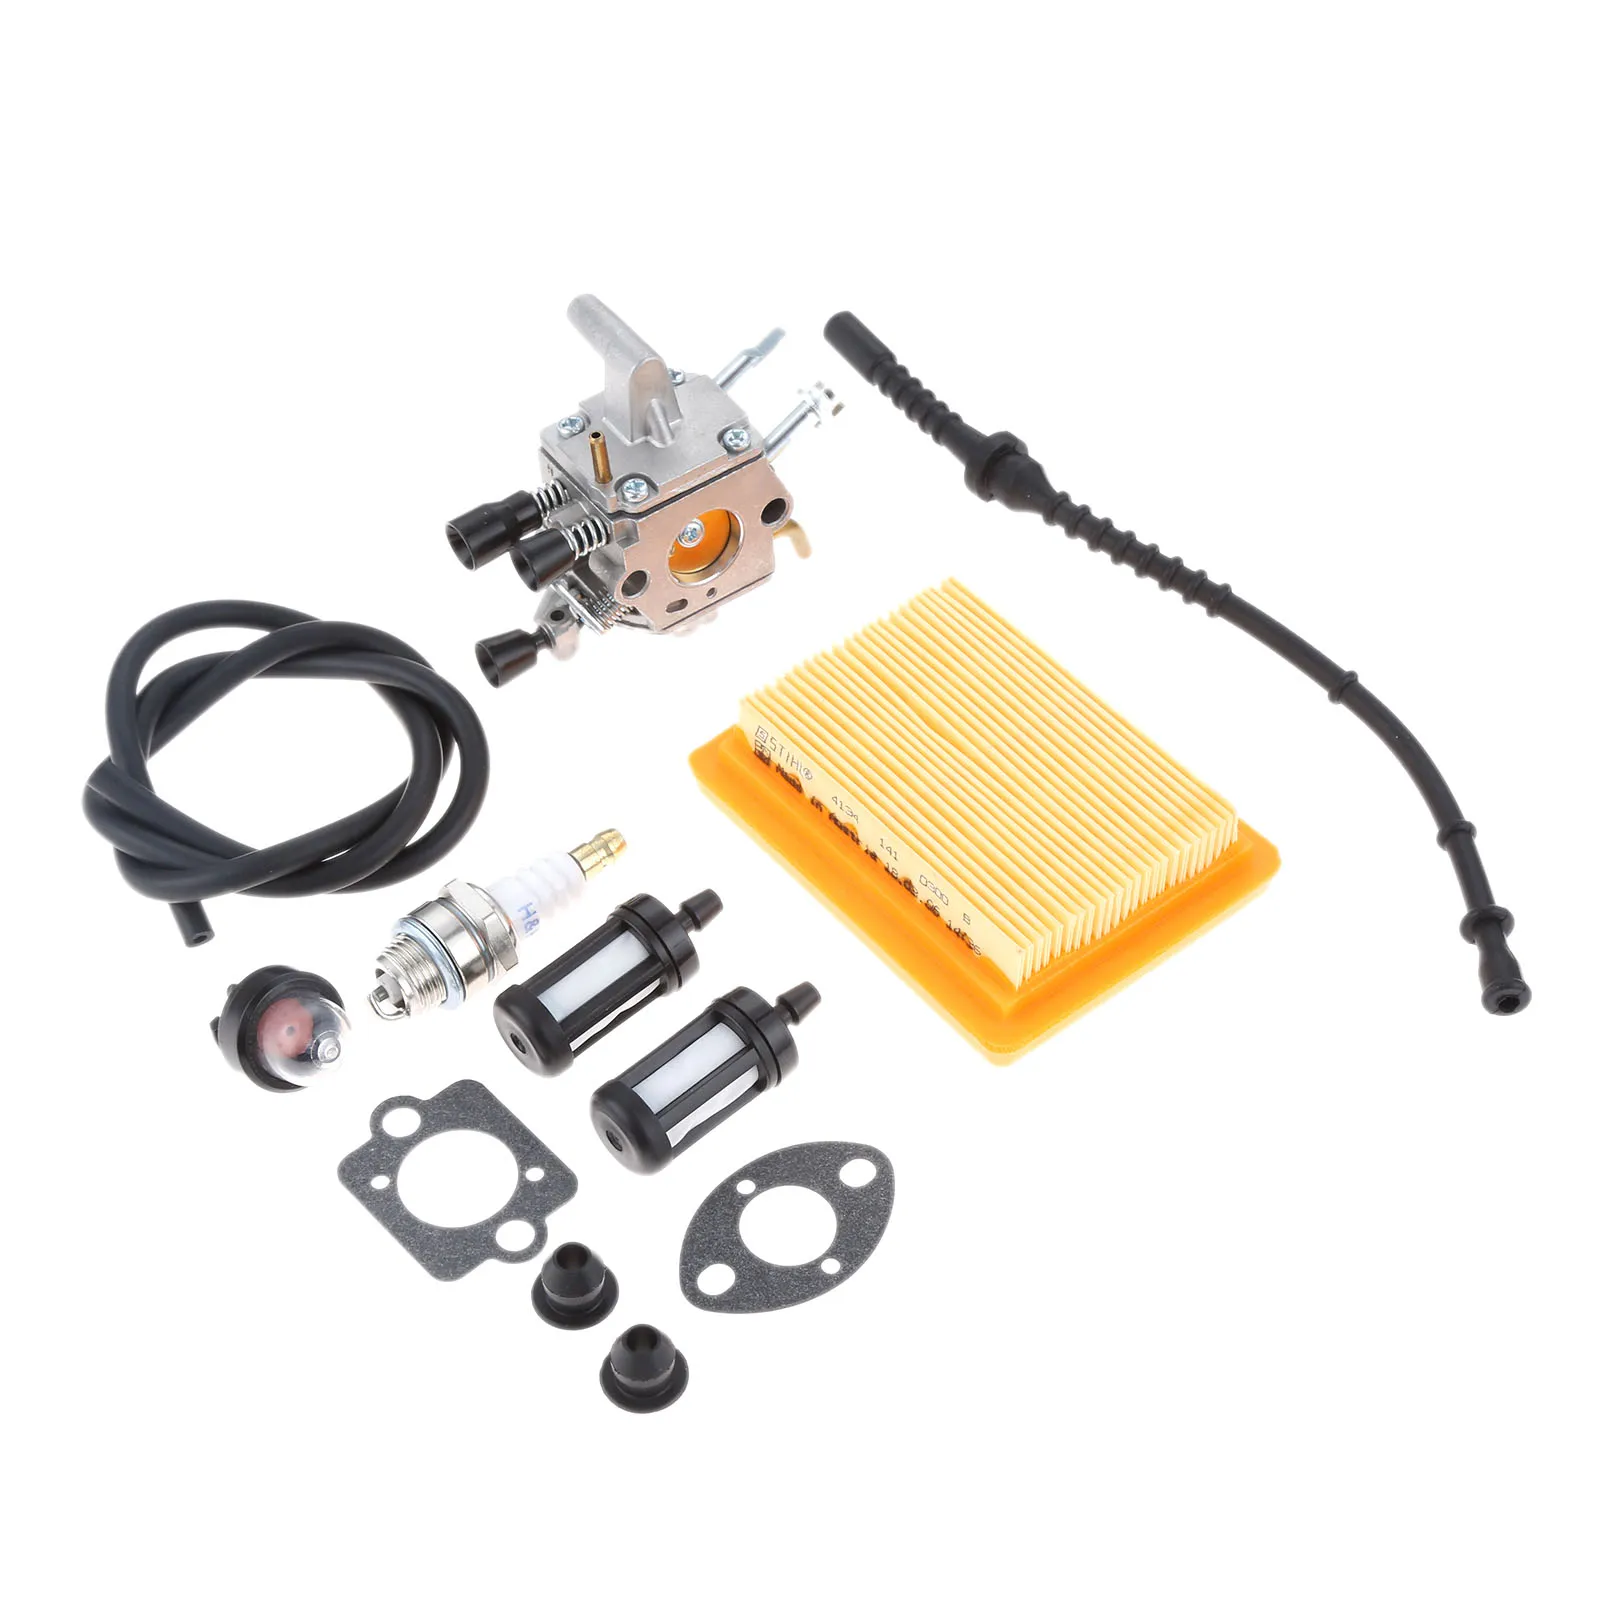 

1Set Carburetor & Primer Bulb Air Fuel Filter Repower Kit for STIHL FS120 FS200 FS250 FS300 FS/FR350 FR450 FR480 String Trimmer